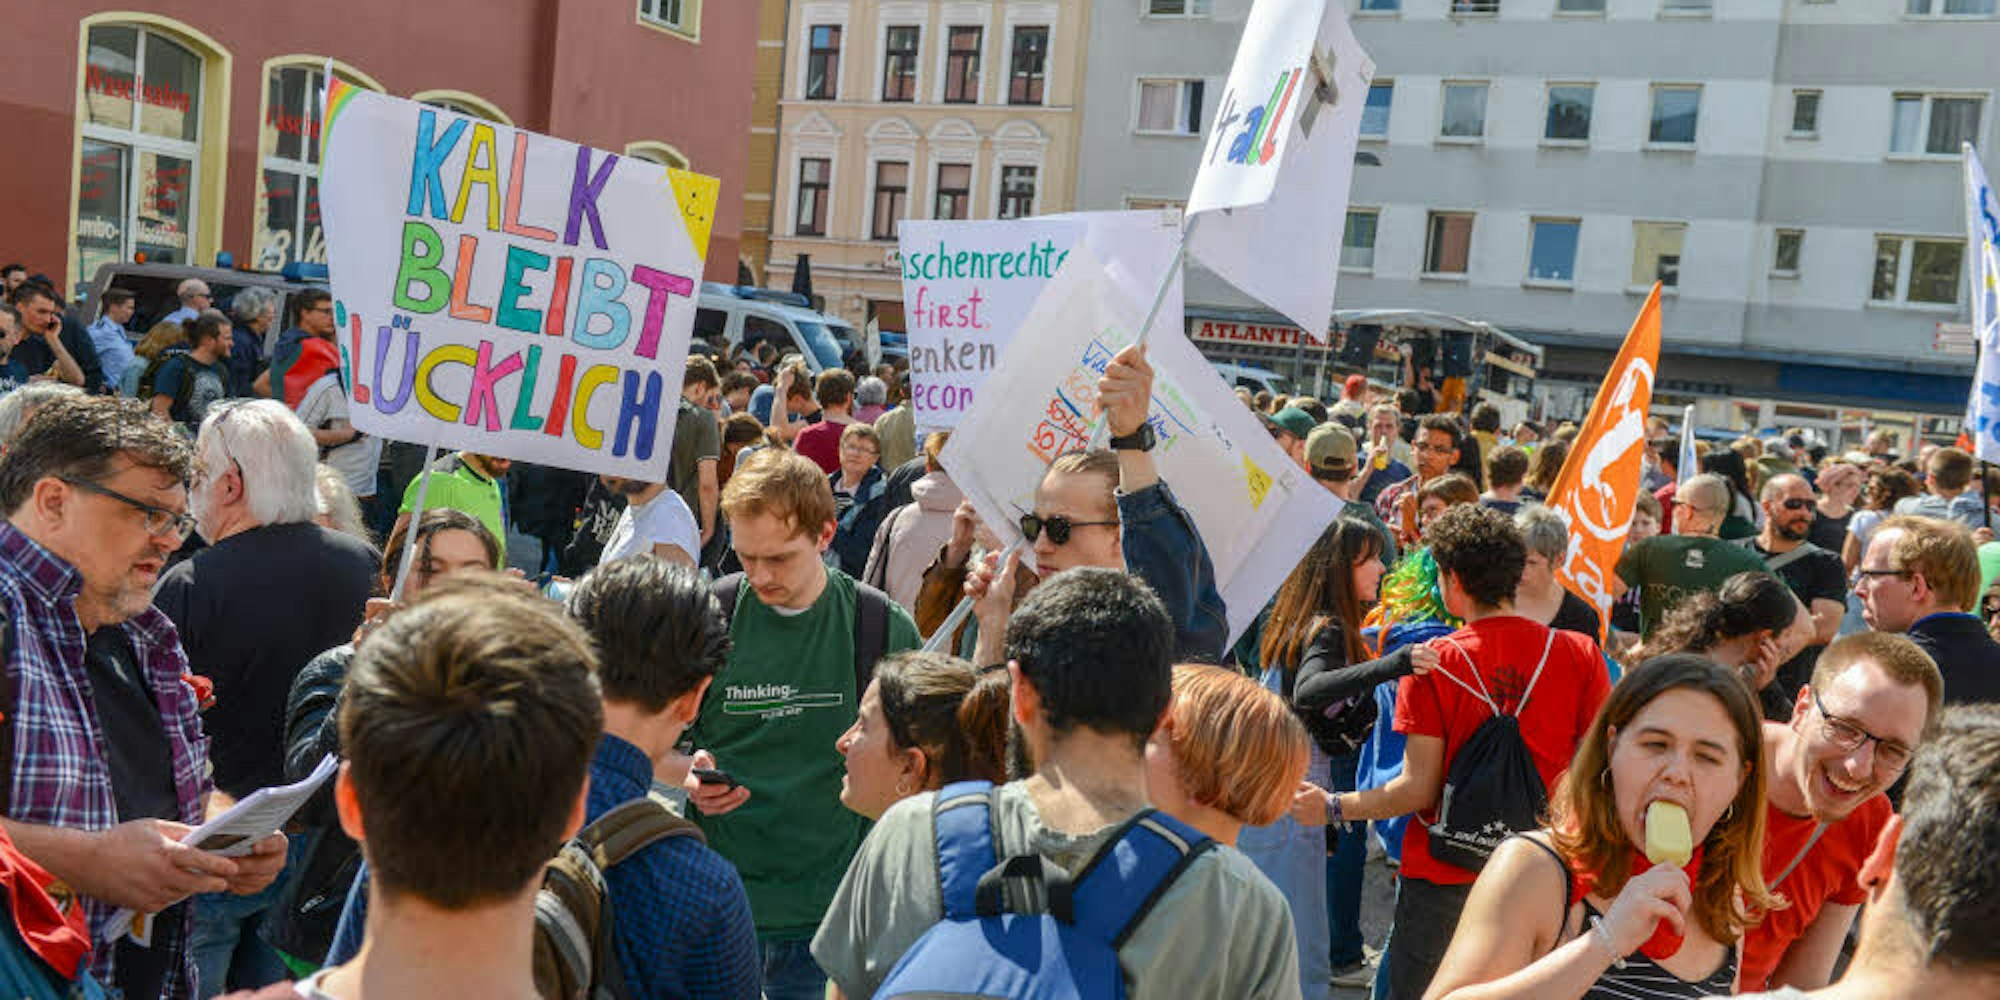 „Kalk bleibt glücklich“: Demo vor dem Bürgerhaus